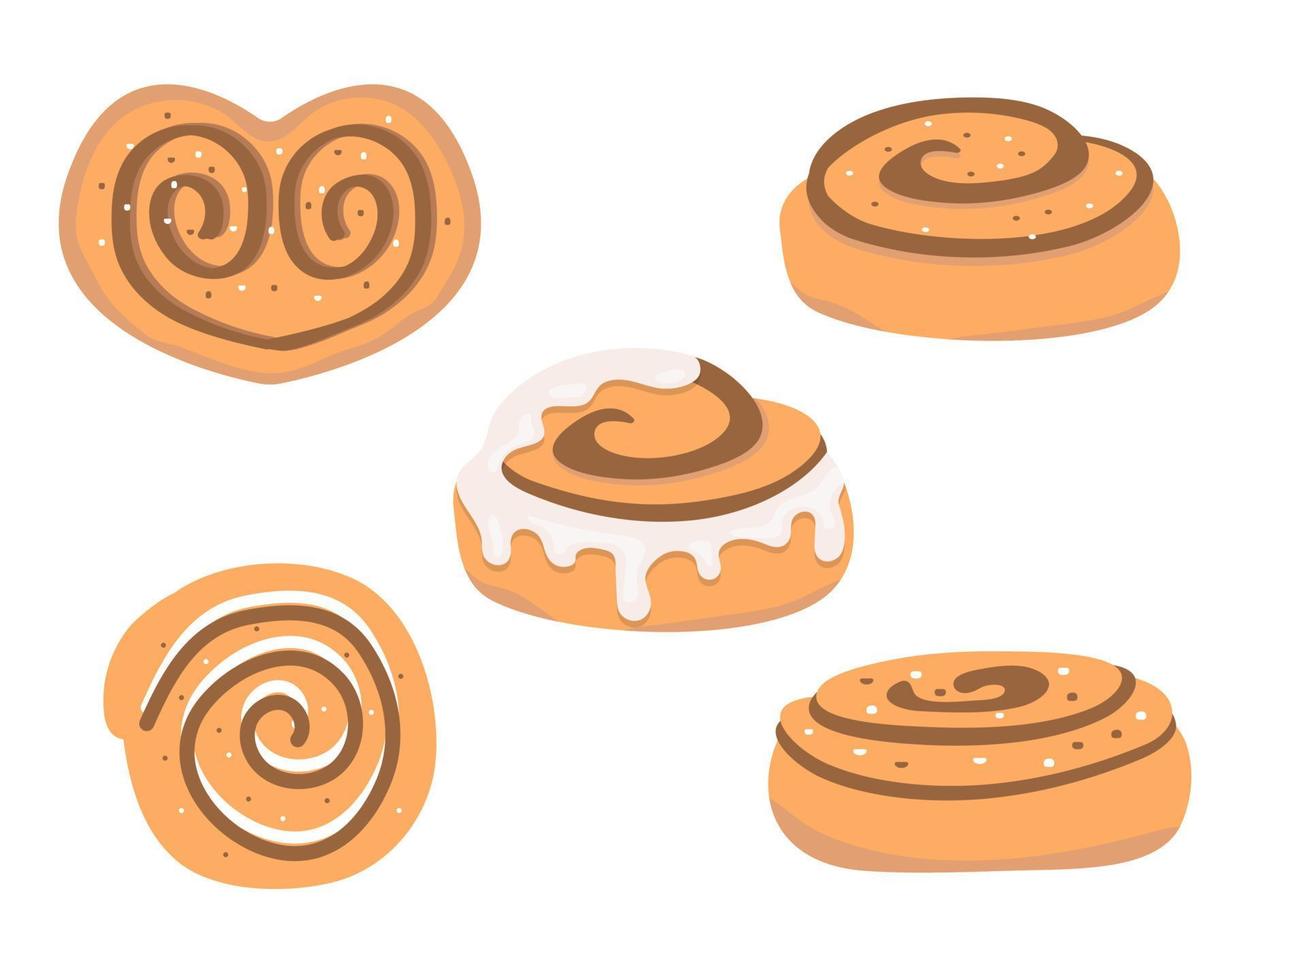 kaneelbroodjes set. zoete roll met suiker, glazuur en chocolade, geïsoleerd op een witte achtergrond. vector illustratie